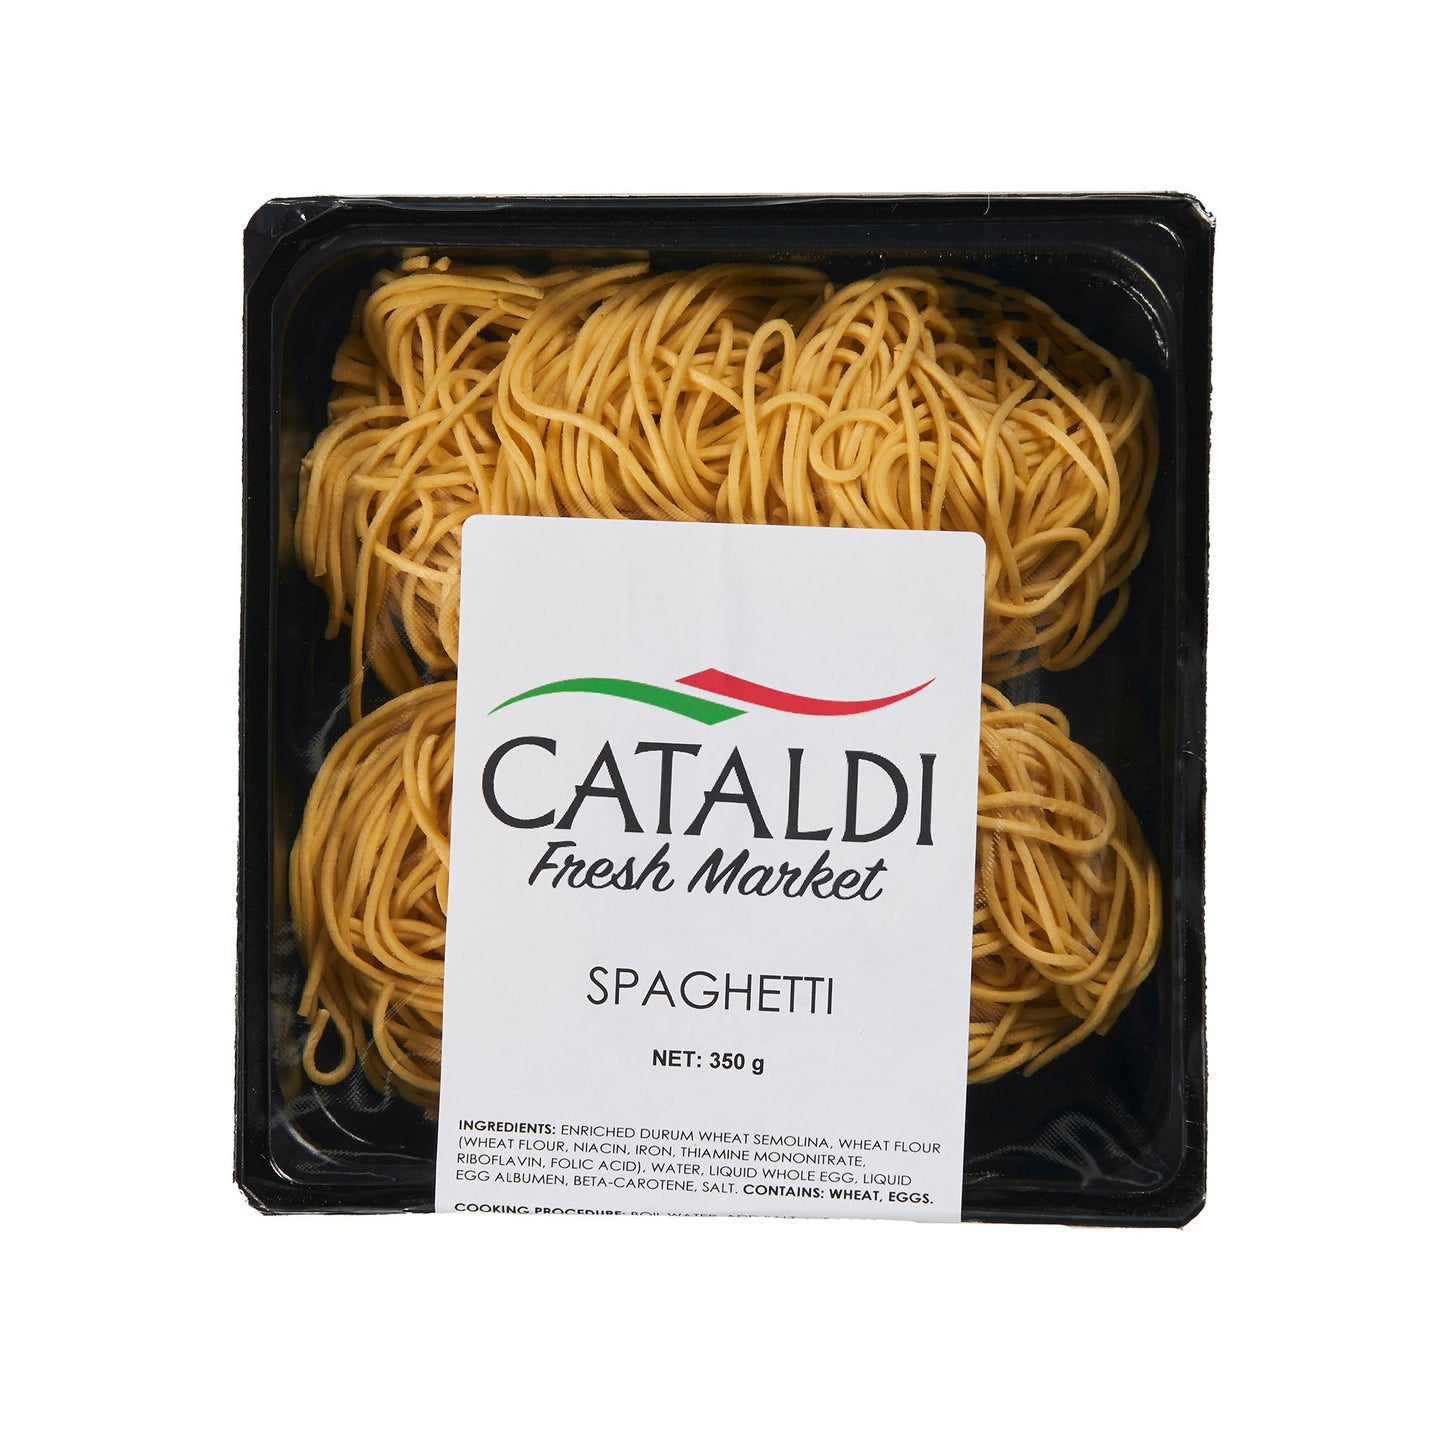 Cataldi Spaghetti 350g